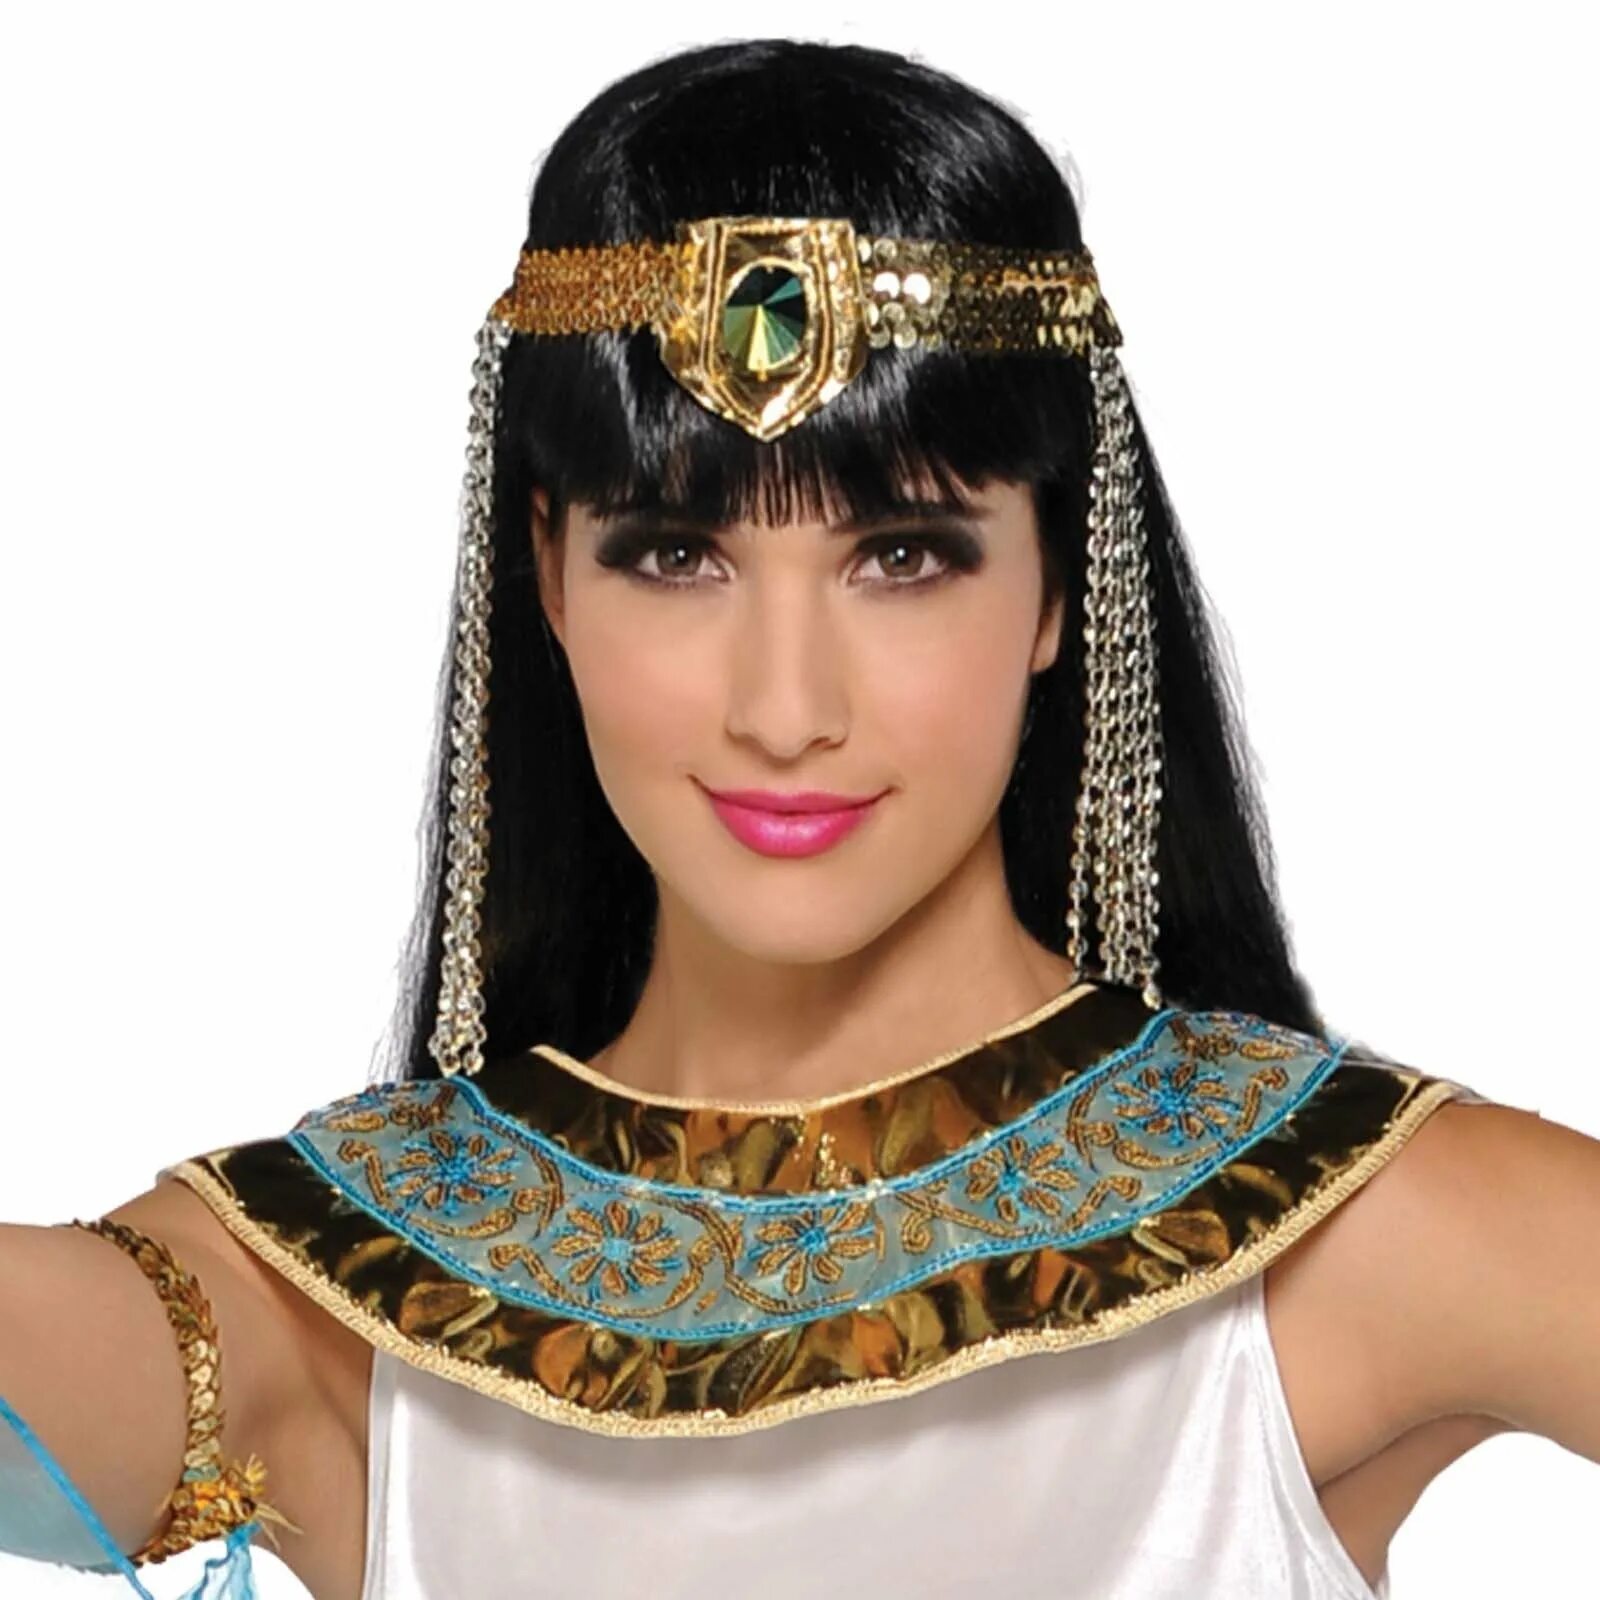 Клеопатра царицы древнего Египта. Египет Нефертити Клеопатра. Клеопатра правительница Египта. Костюм Нефертити Клеопатра.